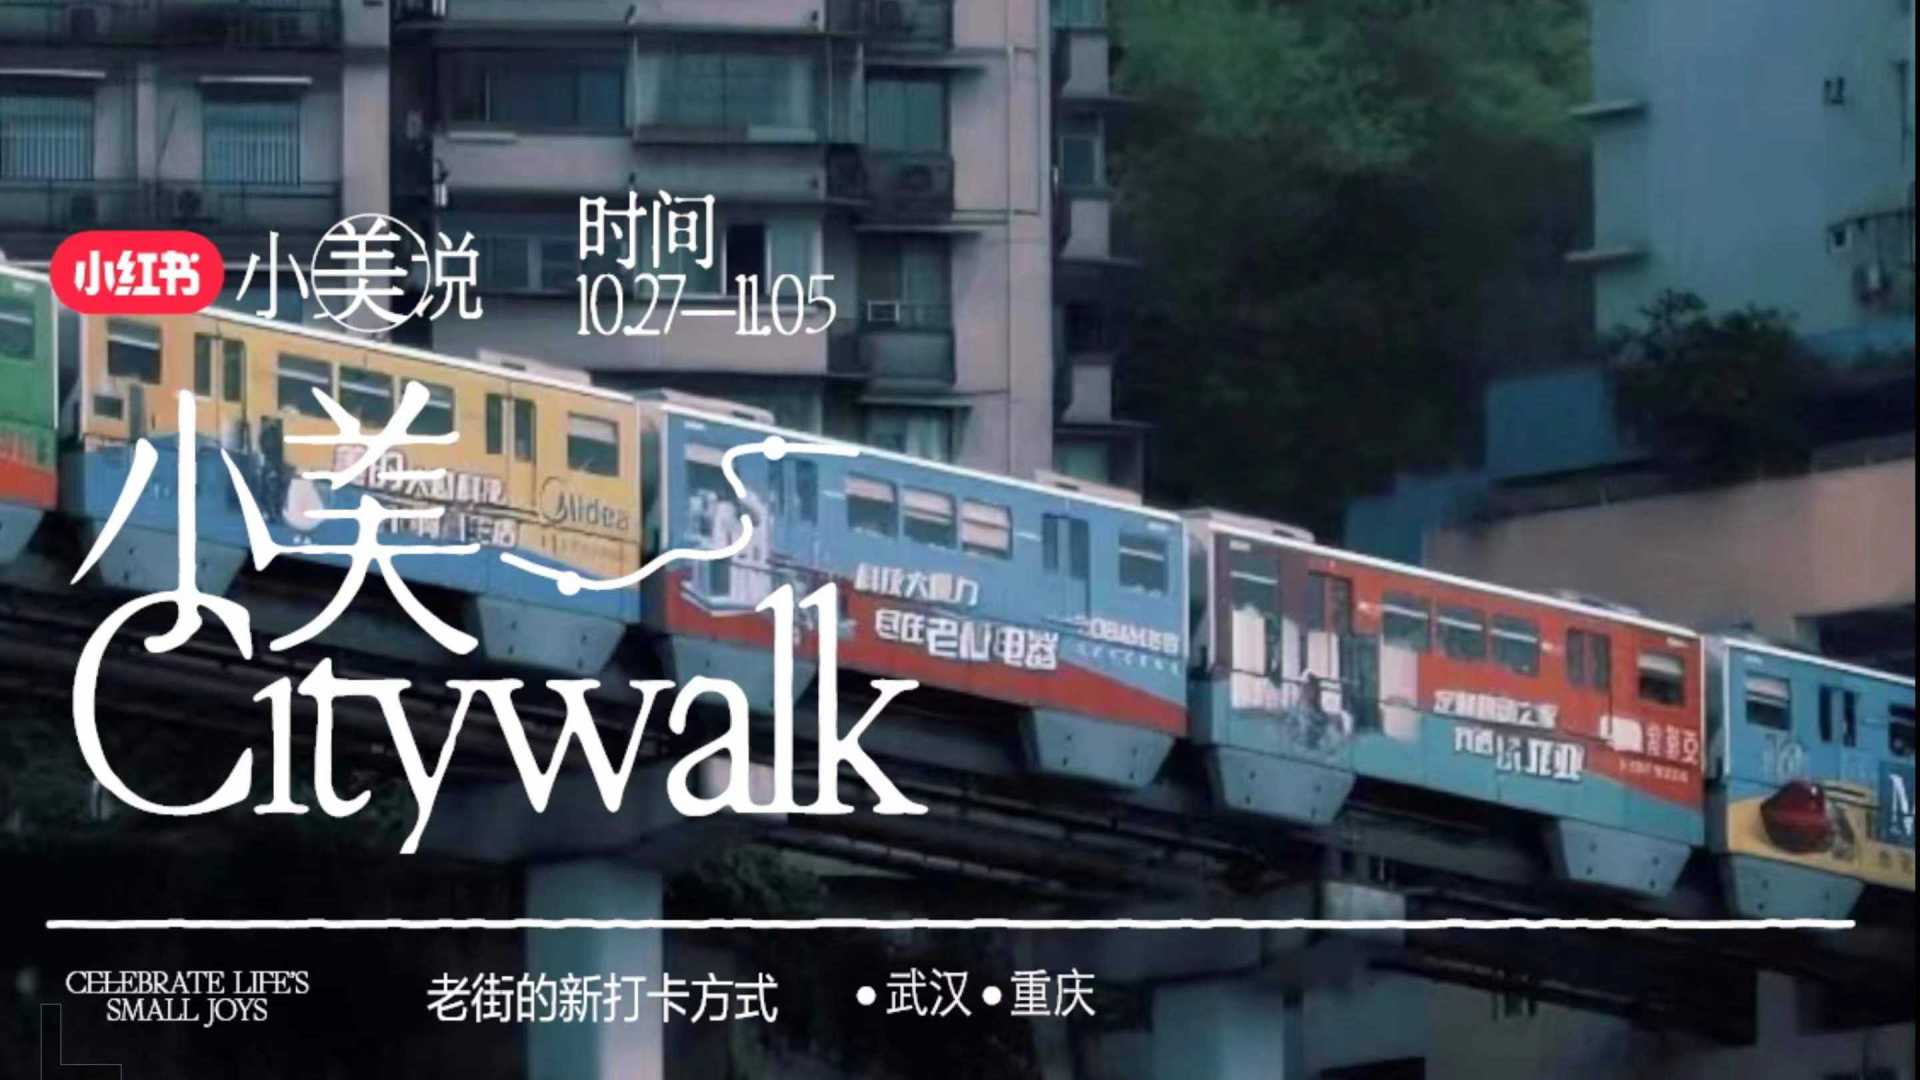 小红书｜小美说 Citywalk